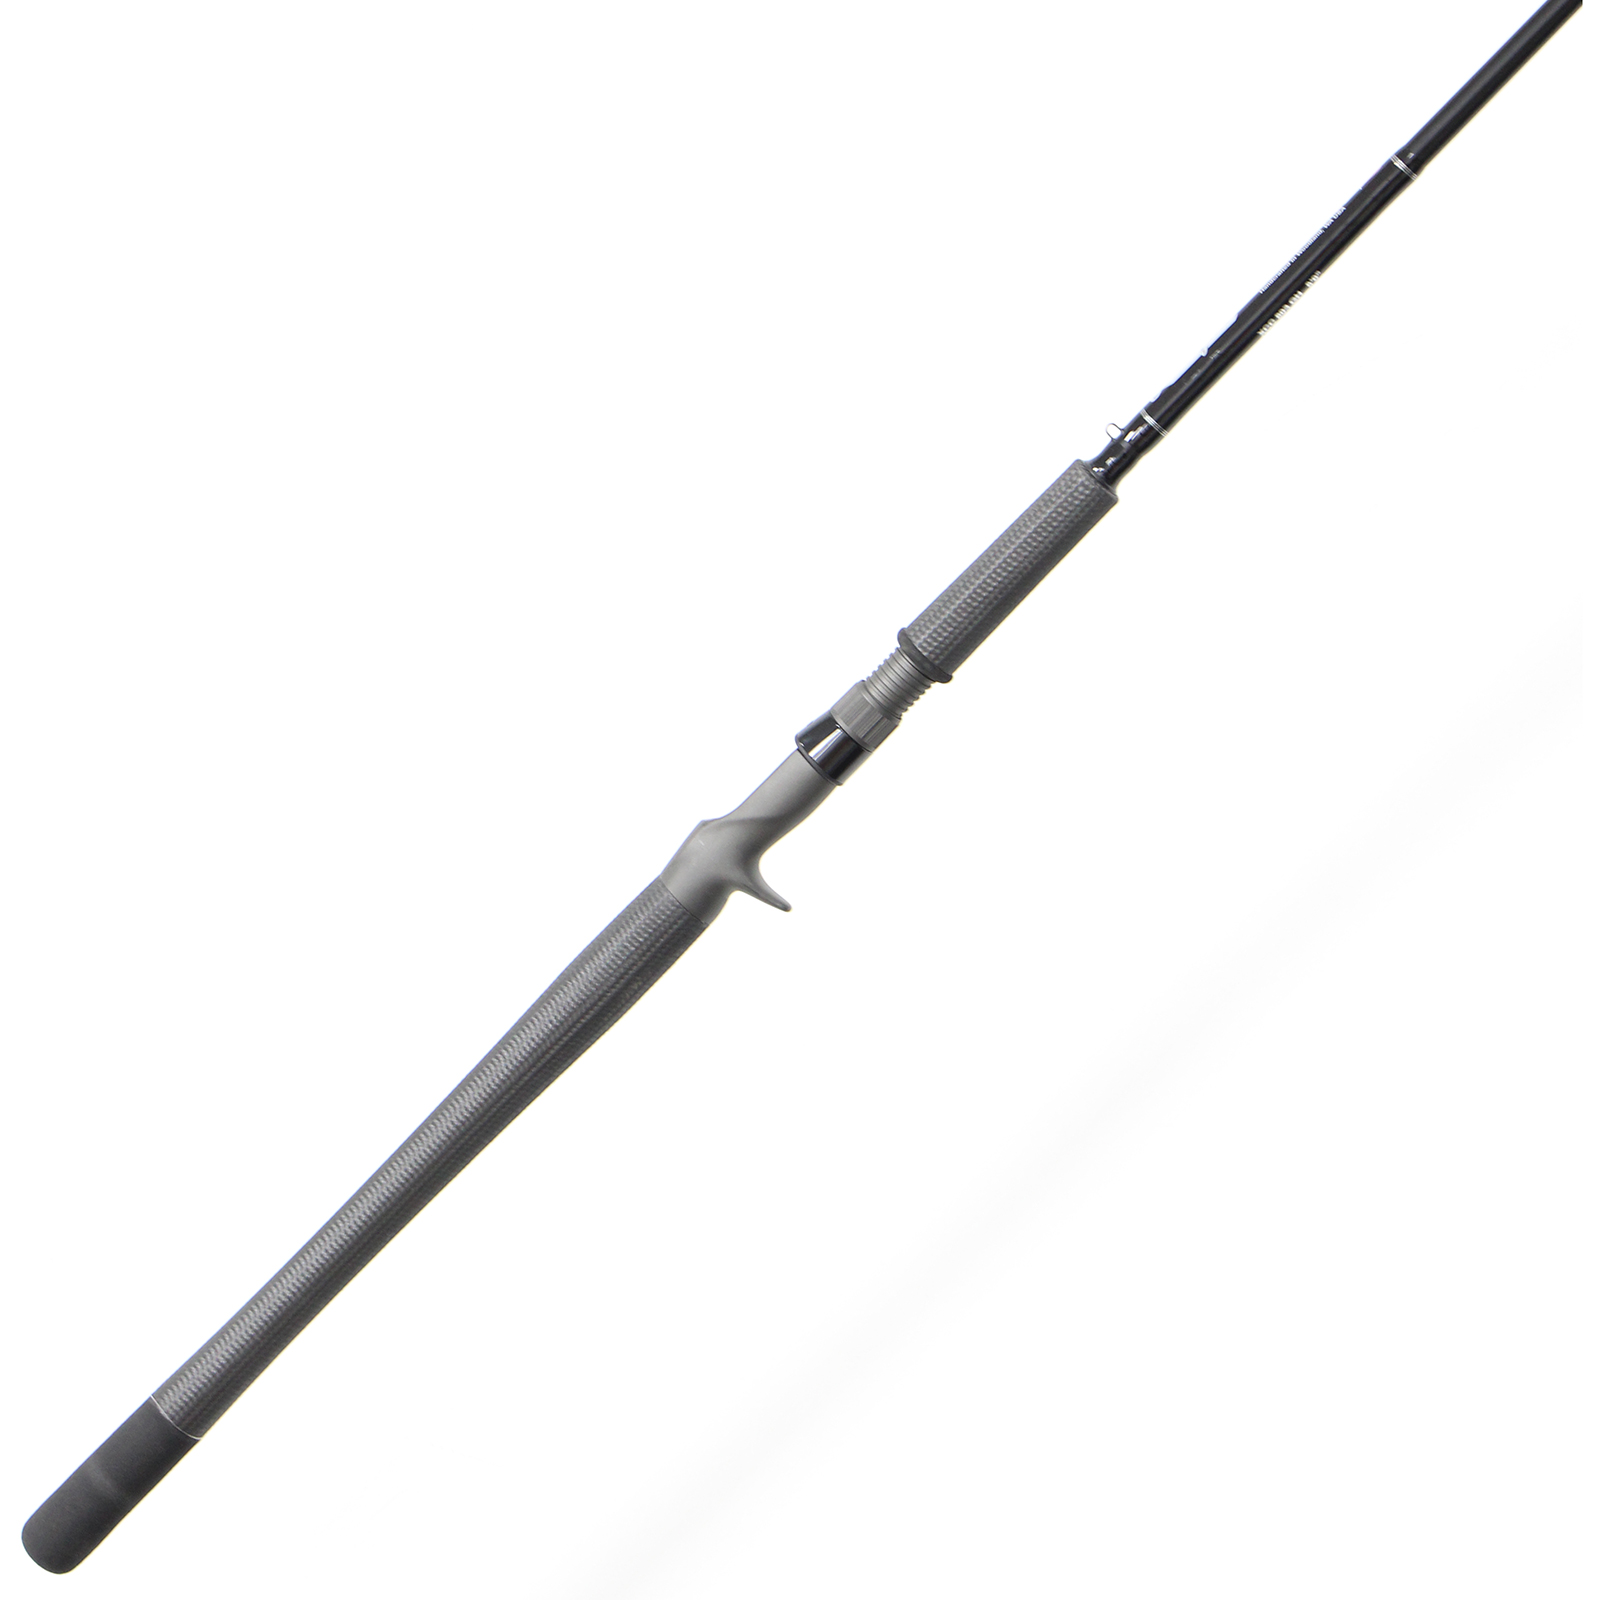 Lamiglas Redline Casting Rod - 9'4 - Medium